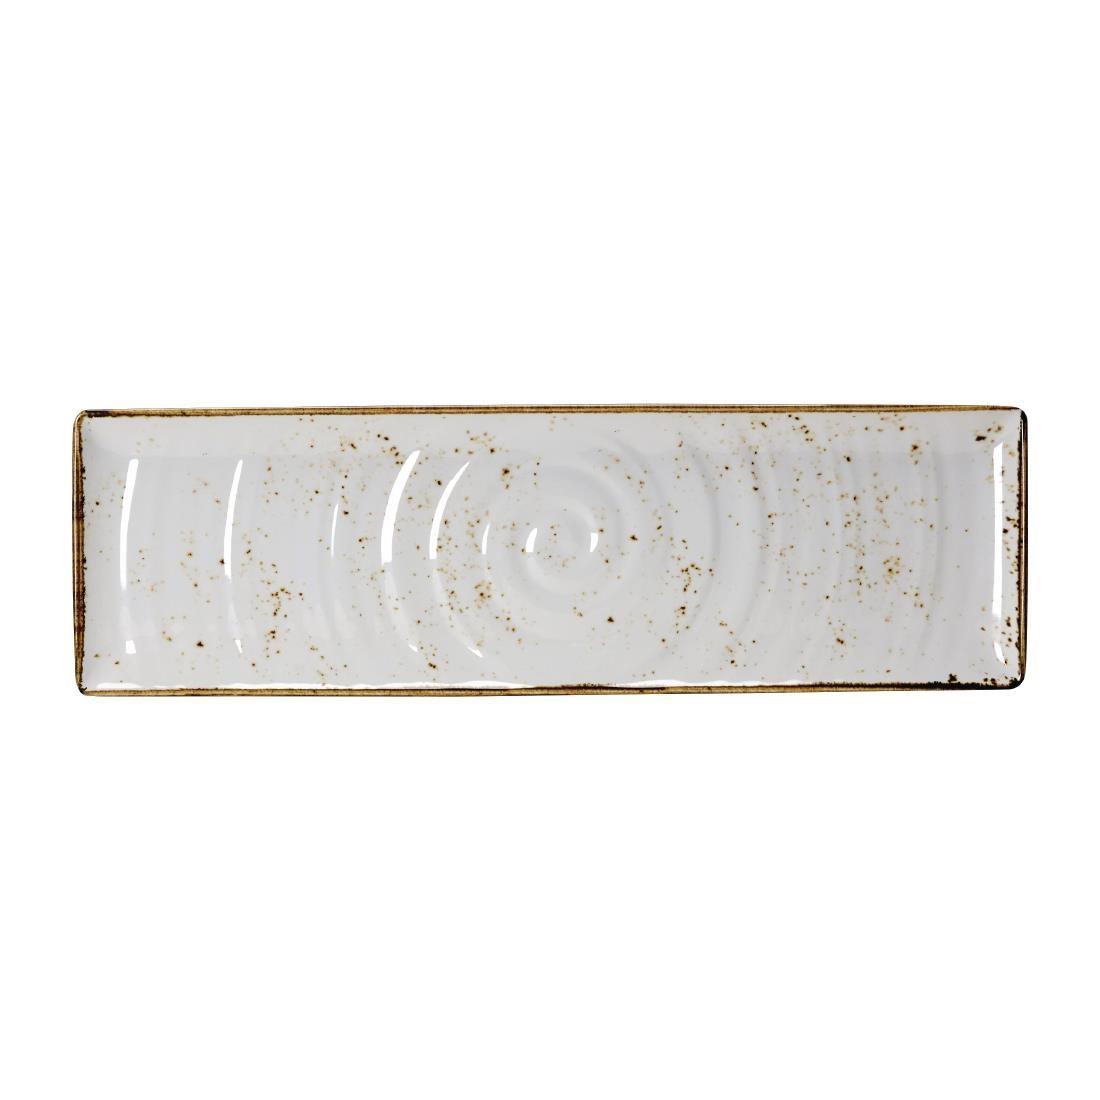 Steelite Craft Melamine Rectangular Platter White GN 2/4 - VV460  - 1